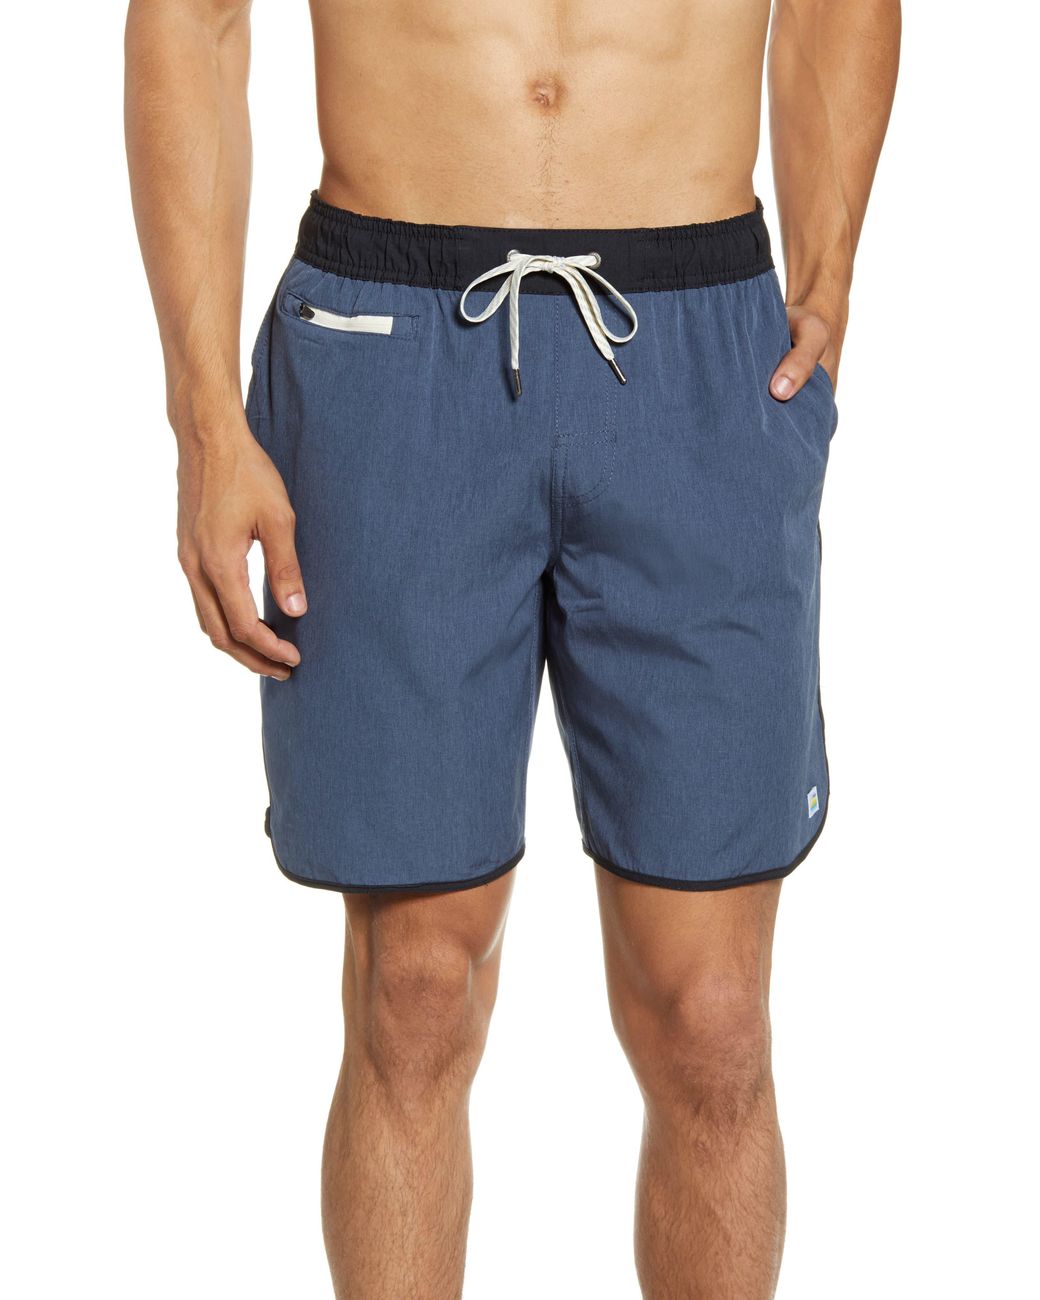 Vuori Linen Banks Shorts in Blue for Men - Lyst